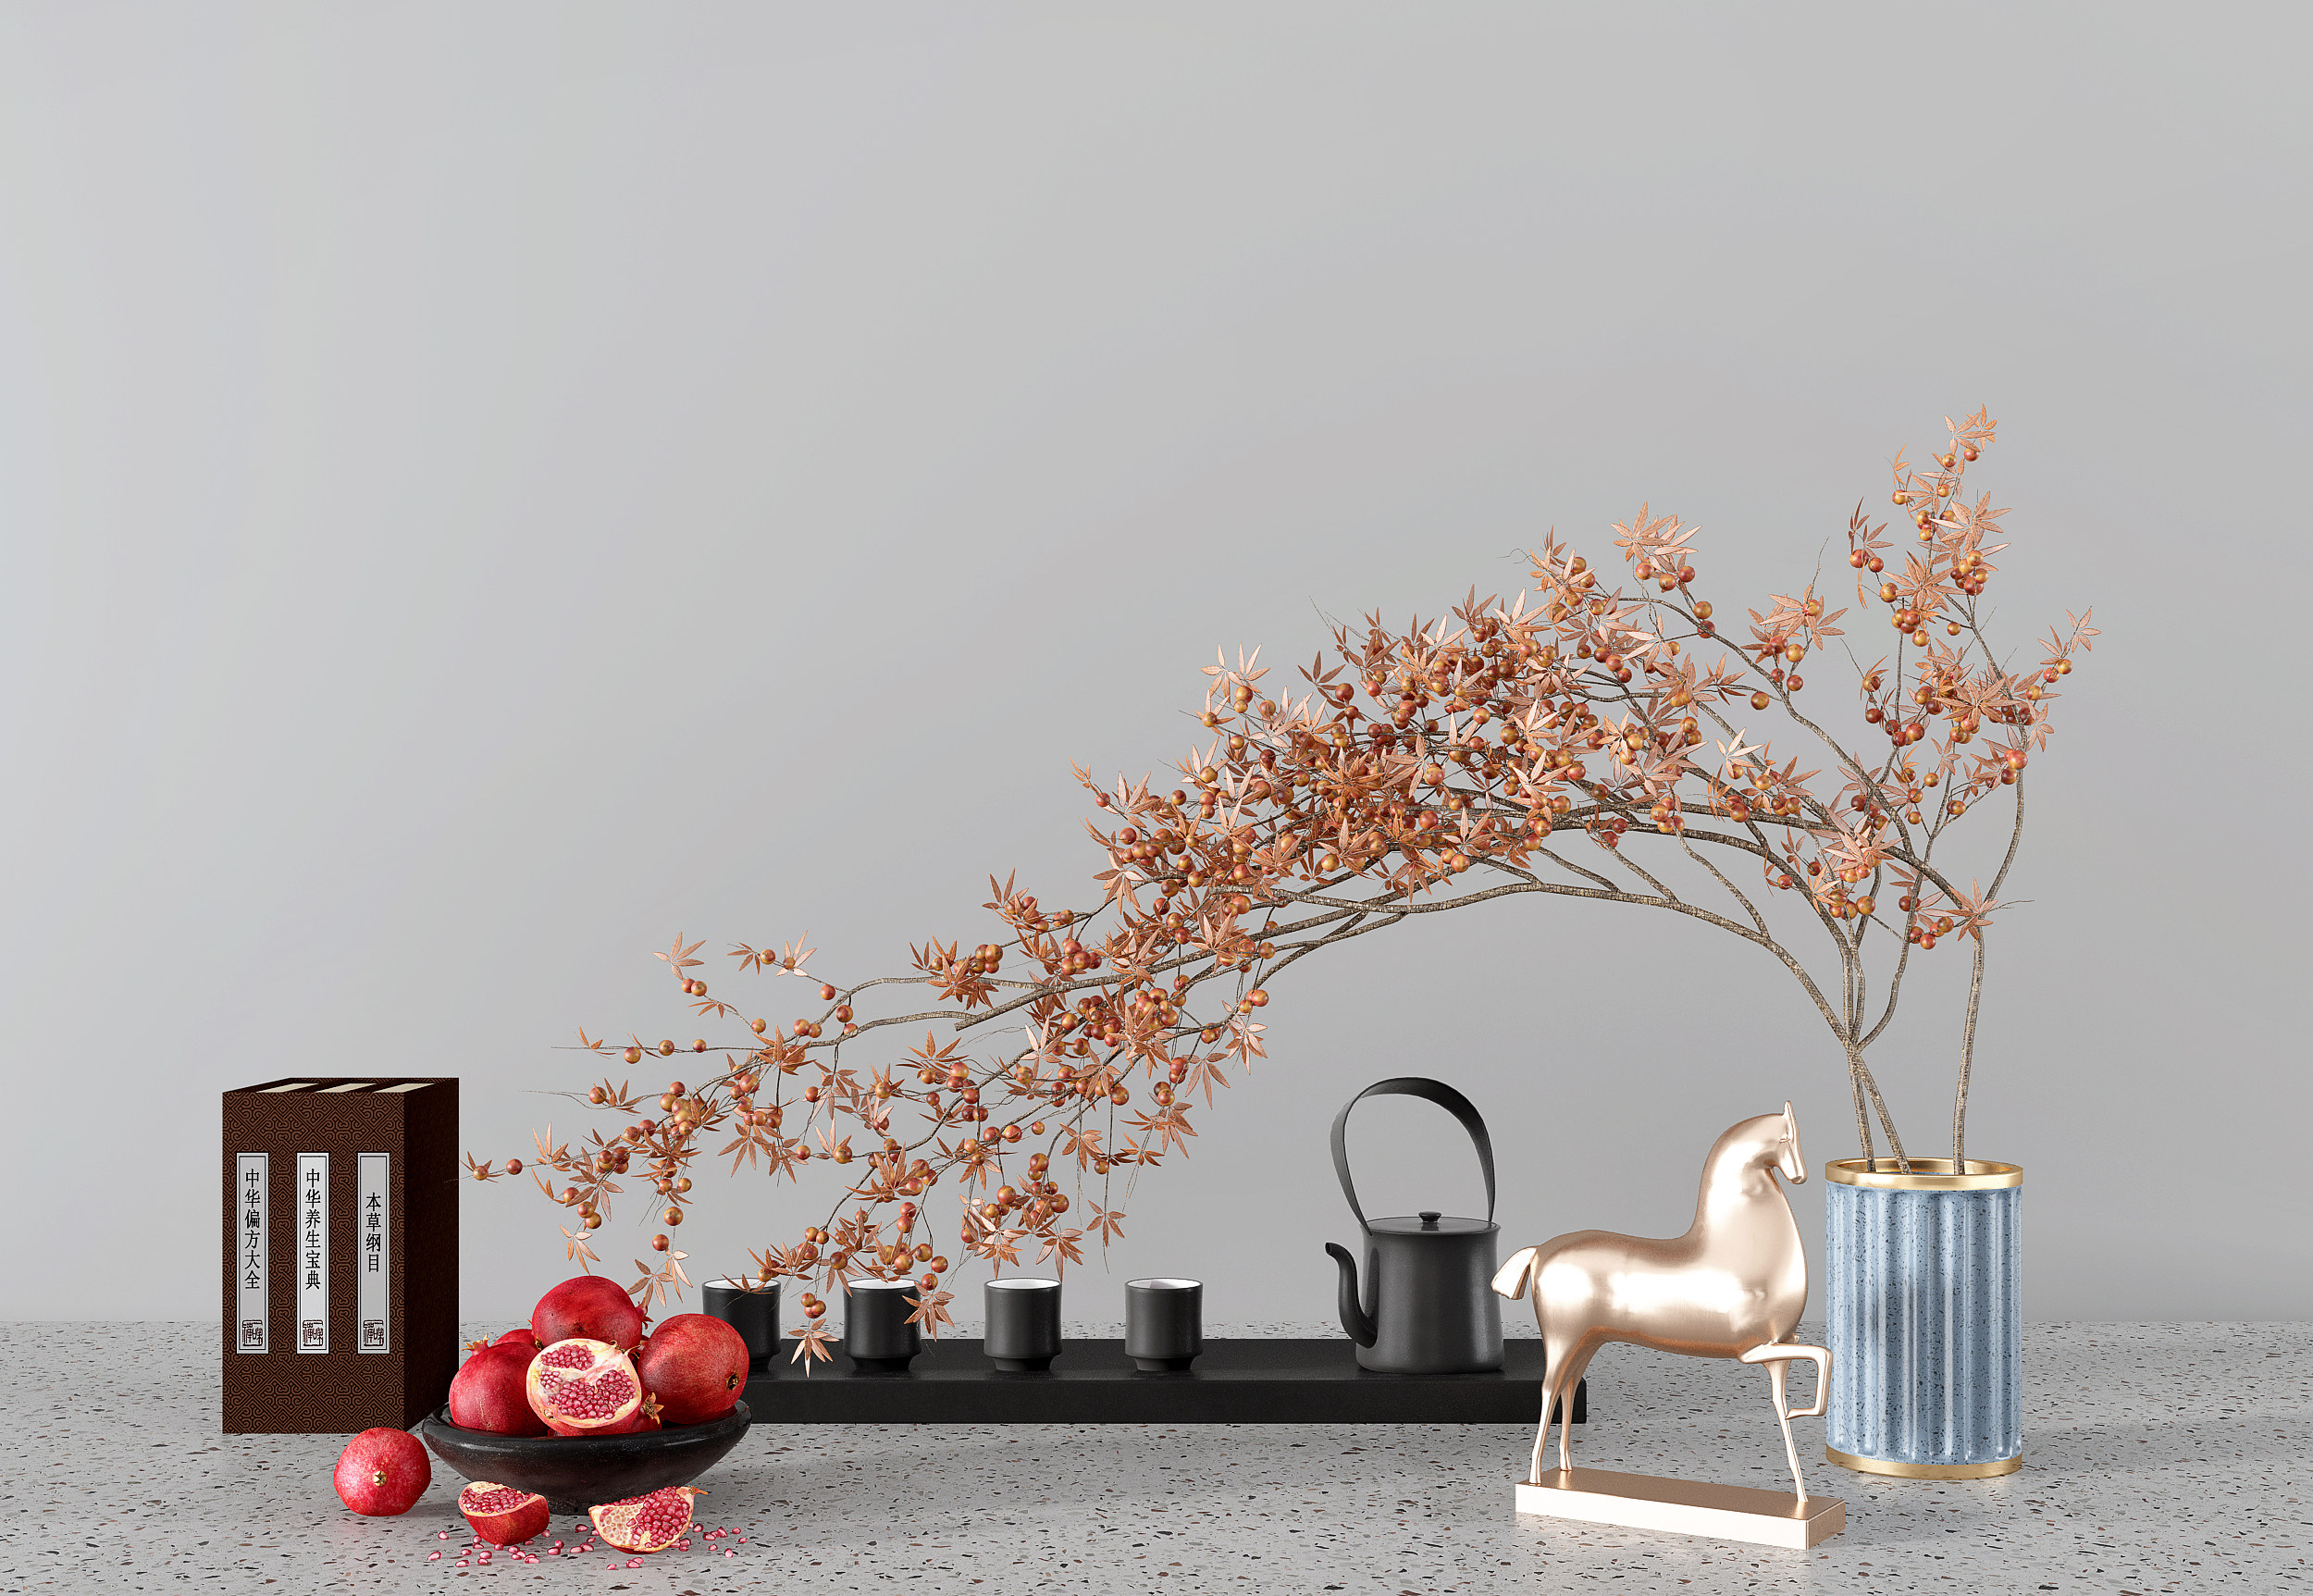 新中式茶壶茶具茶杯果盘石榴饰品摆件组合 3d模型下载